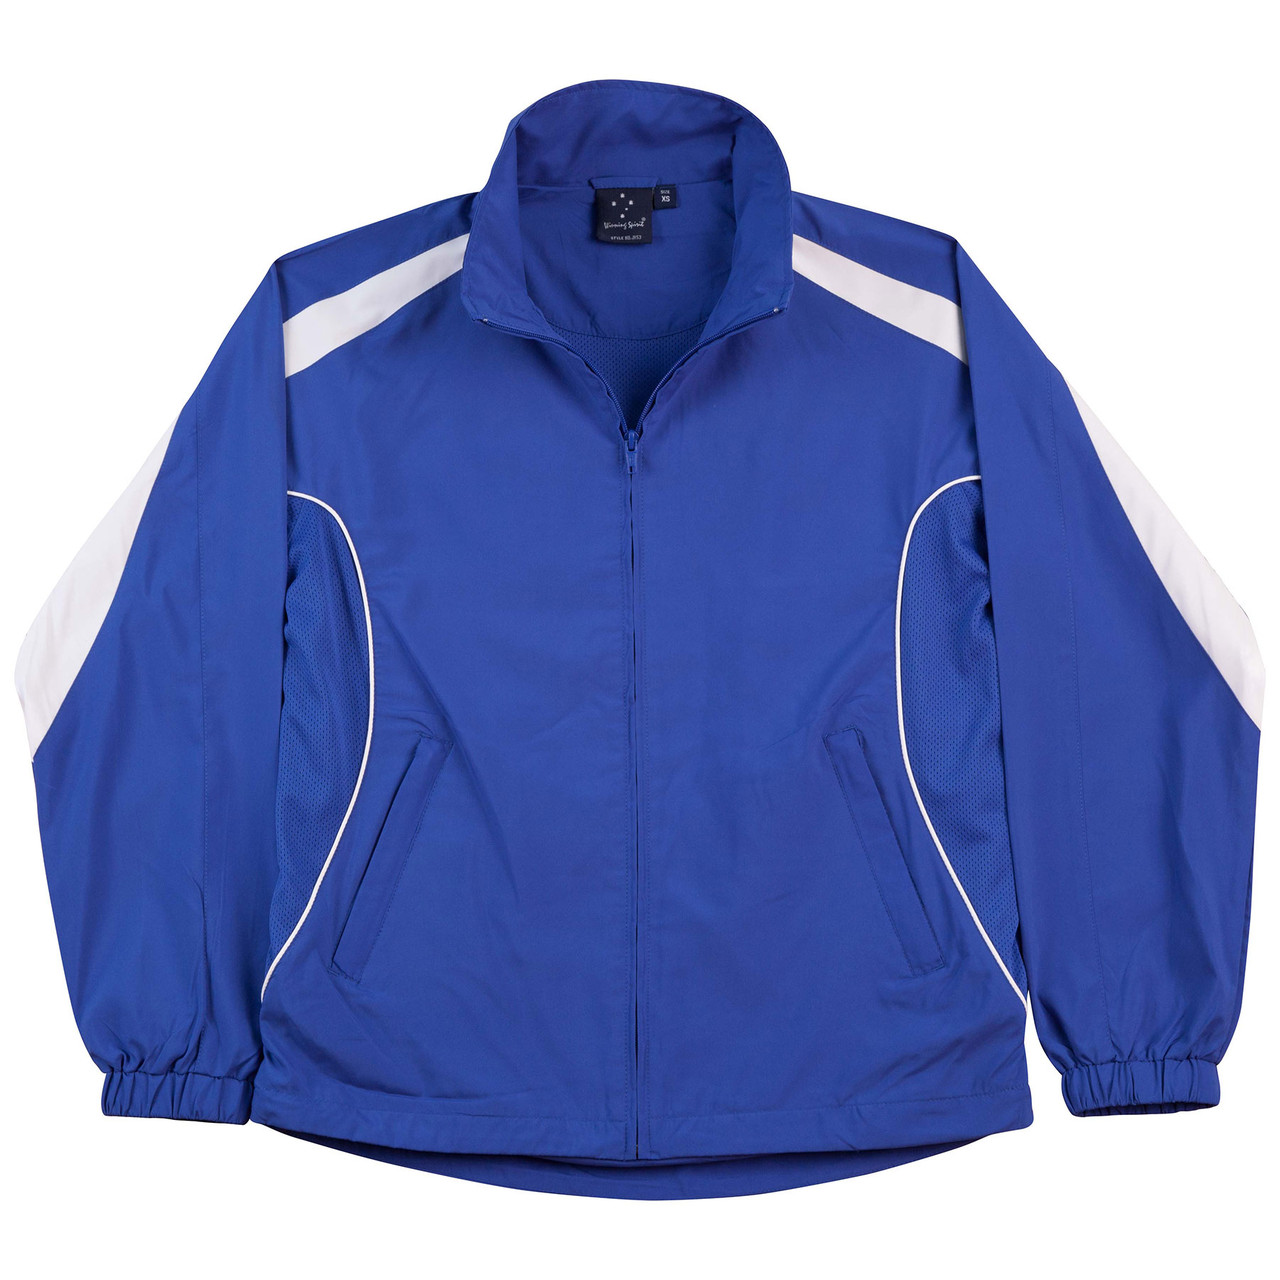 Contrast Warm Up Team Sports Jacket | Shop Online Wholesale Uniforms